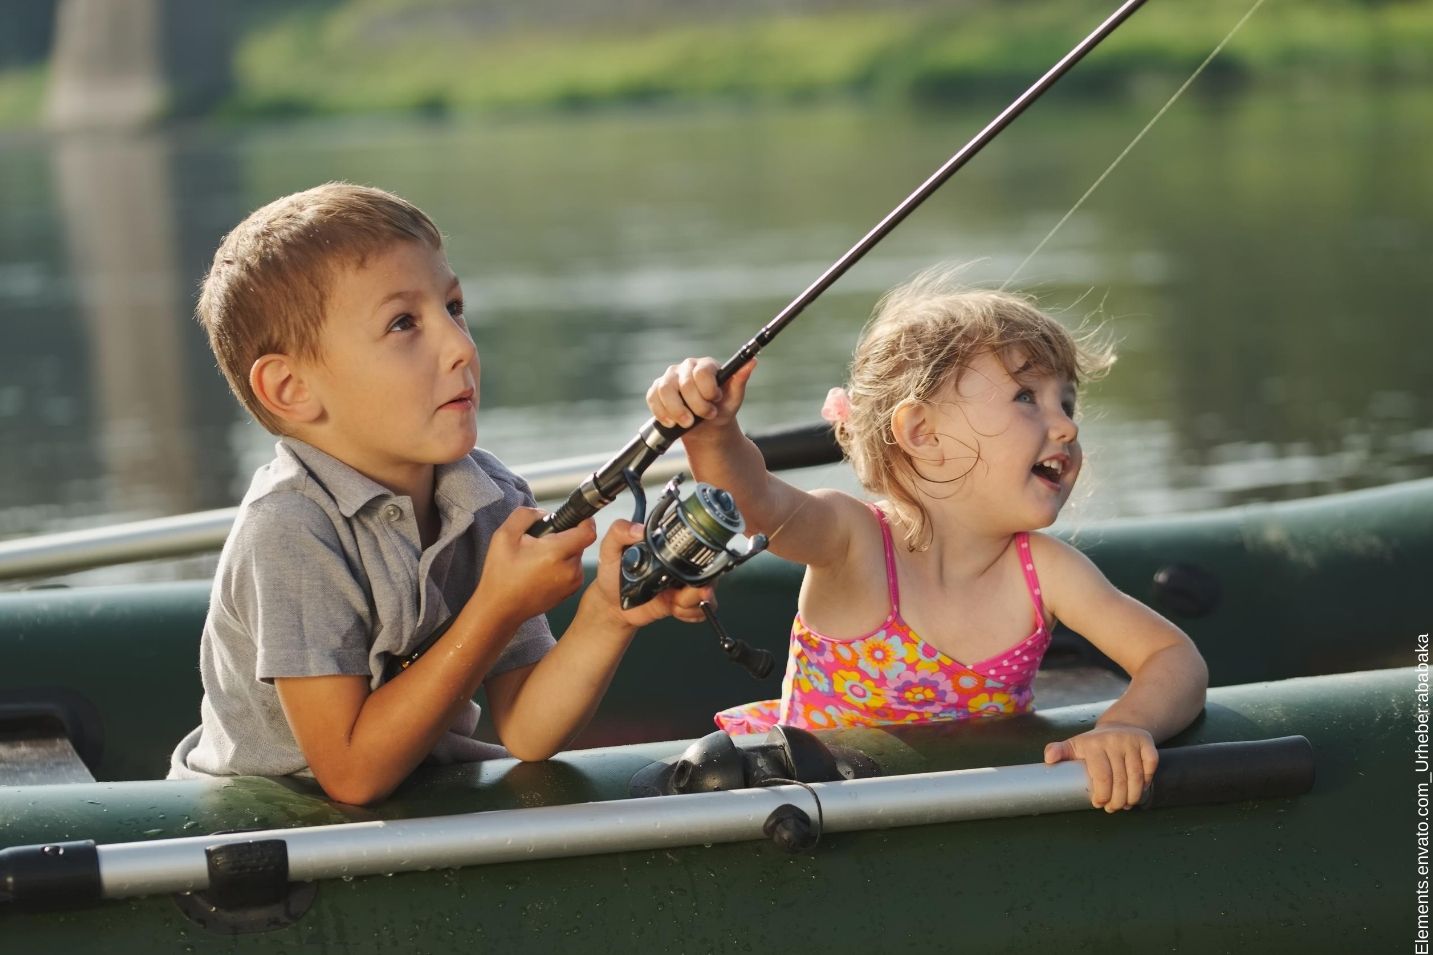 Was beim Bootsurlaub mit Kindern und vor allem bei ADHS beachtet werden sollte